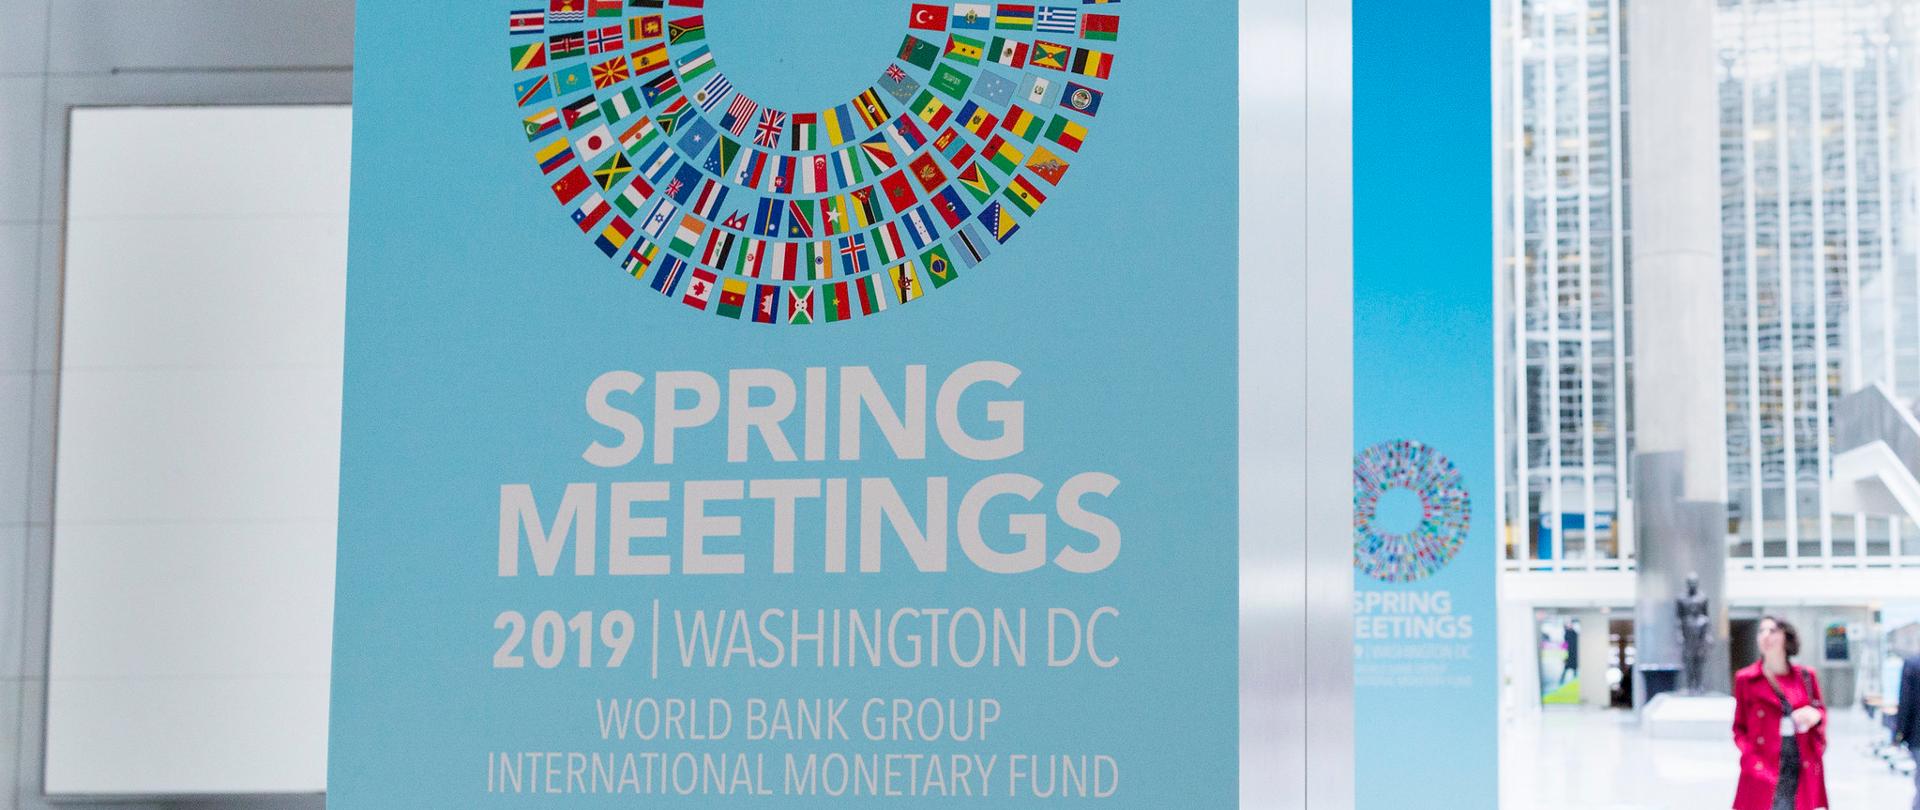 Napis na stojaku reklamowym Spring Meetings 2019 oraz flagi państw-uczestników